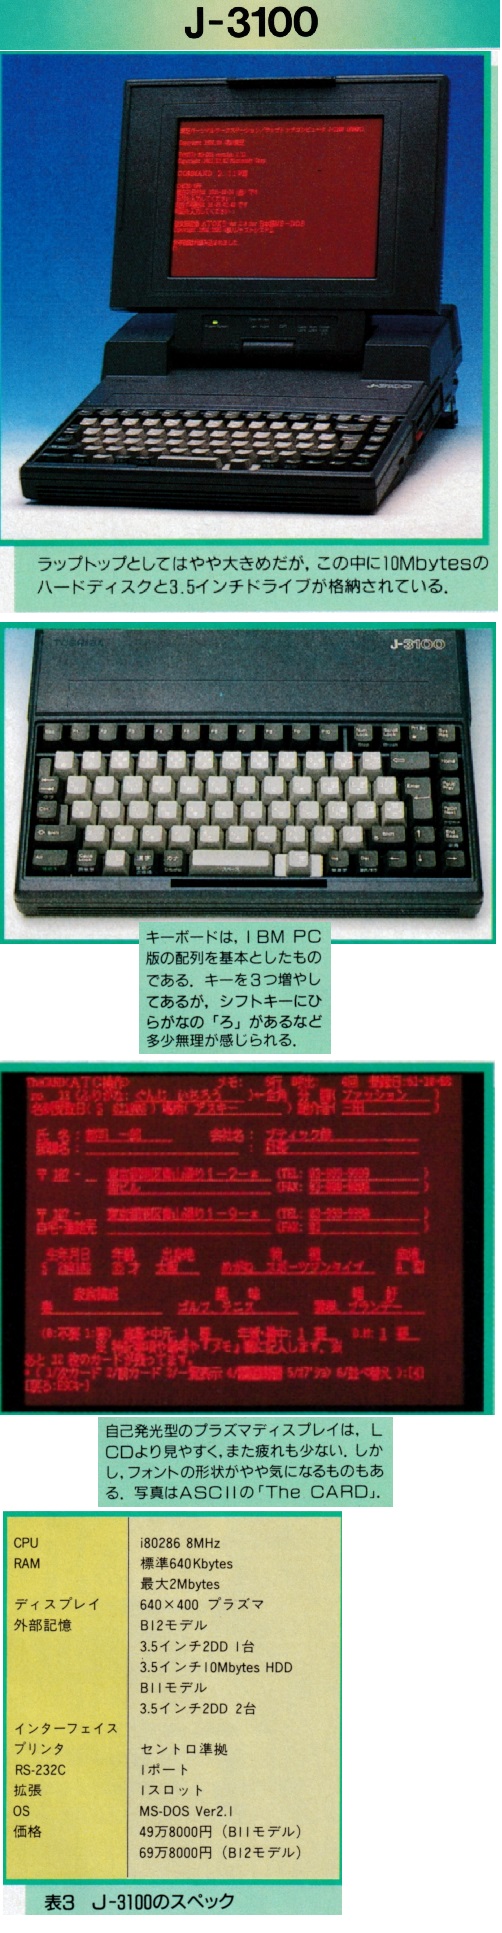 ASCII1986(12)c13J-3100_W502.jpg